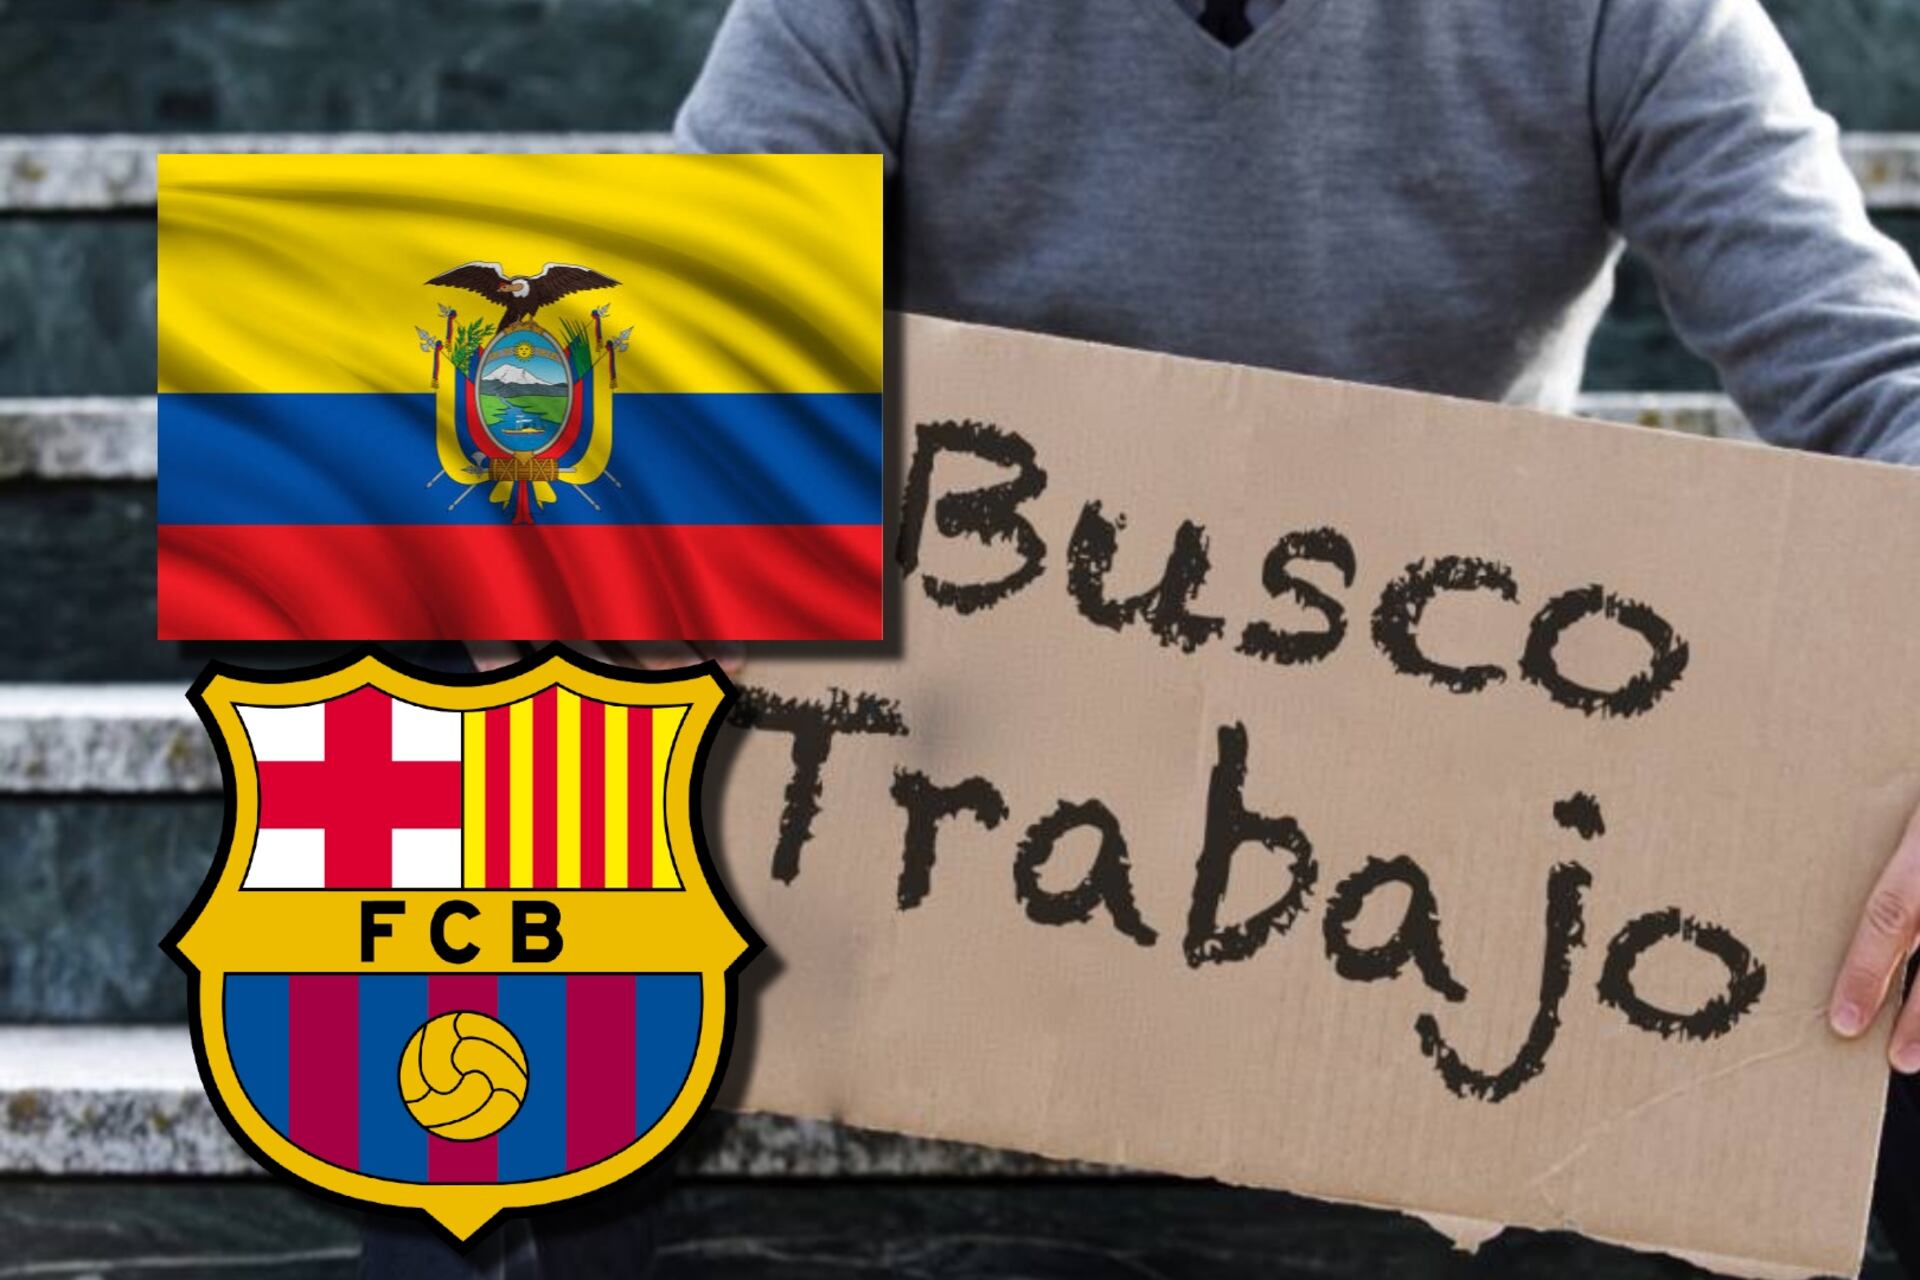 El ecuatoriano que costó 10 millones y le anotó al Barça, hoy busca trabajo